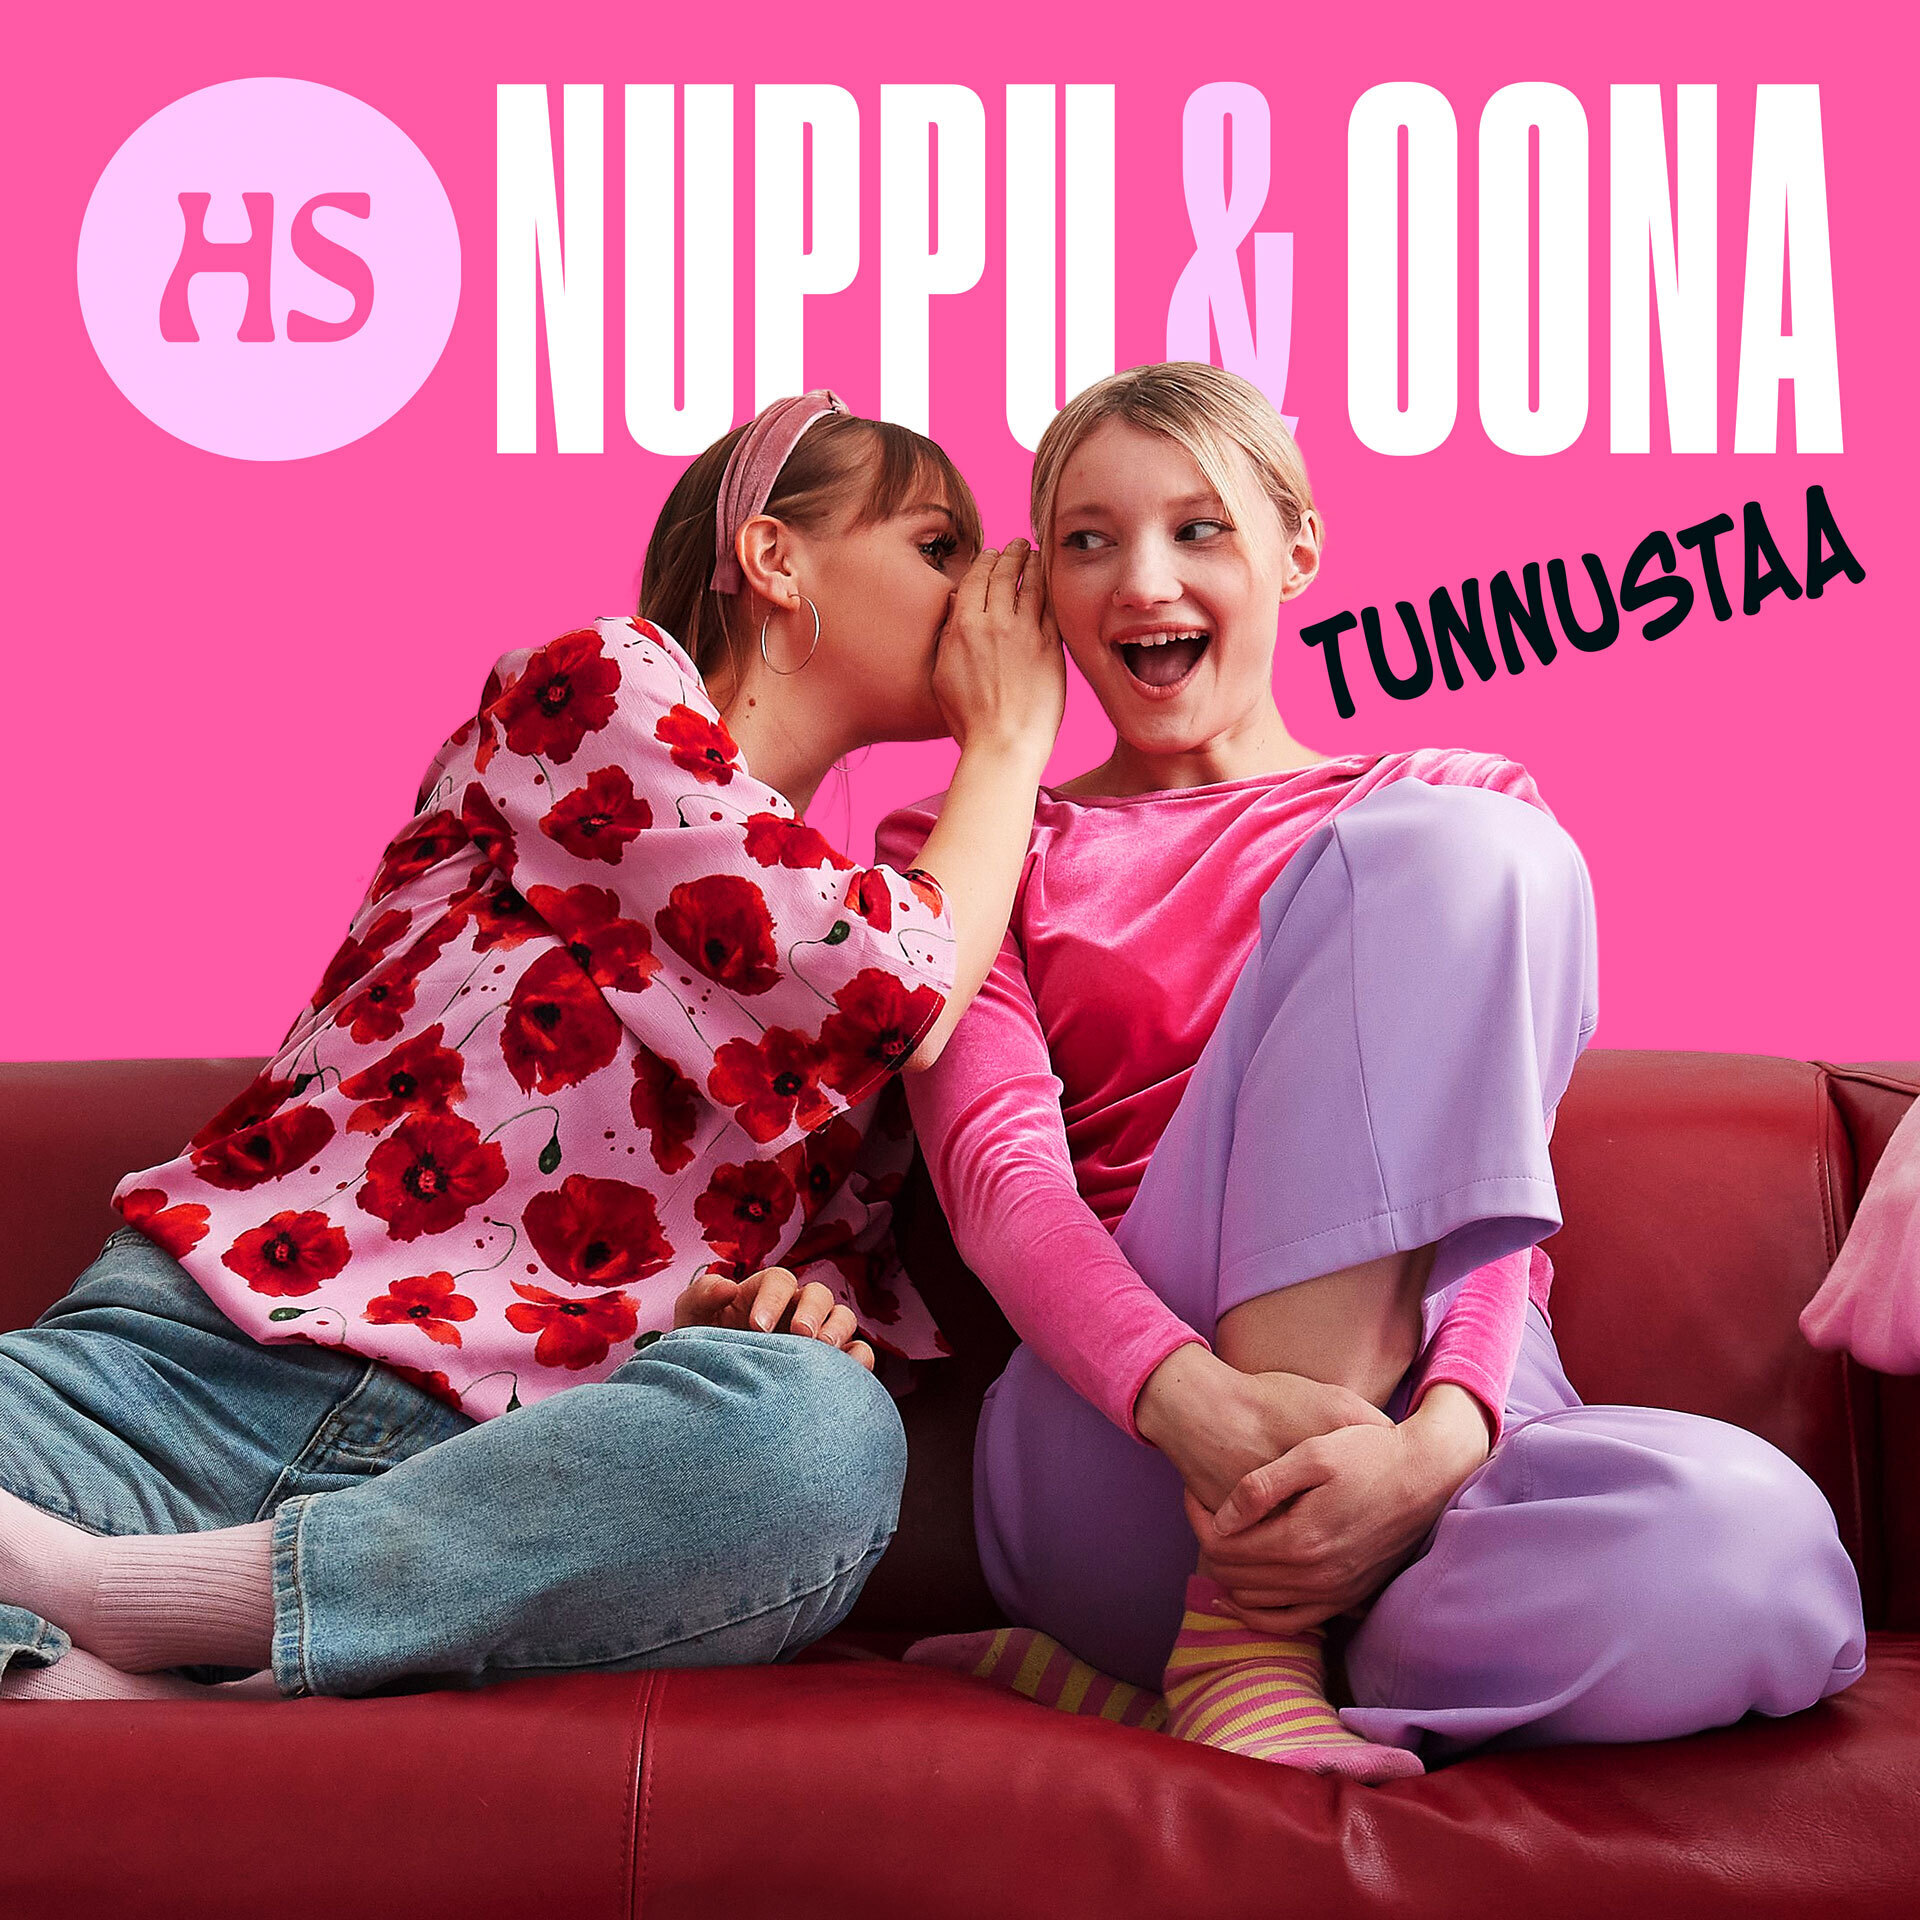 Nuppu ja Oona tunnustaa - podcast